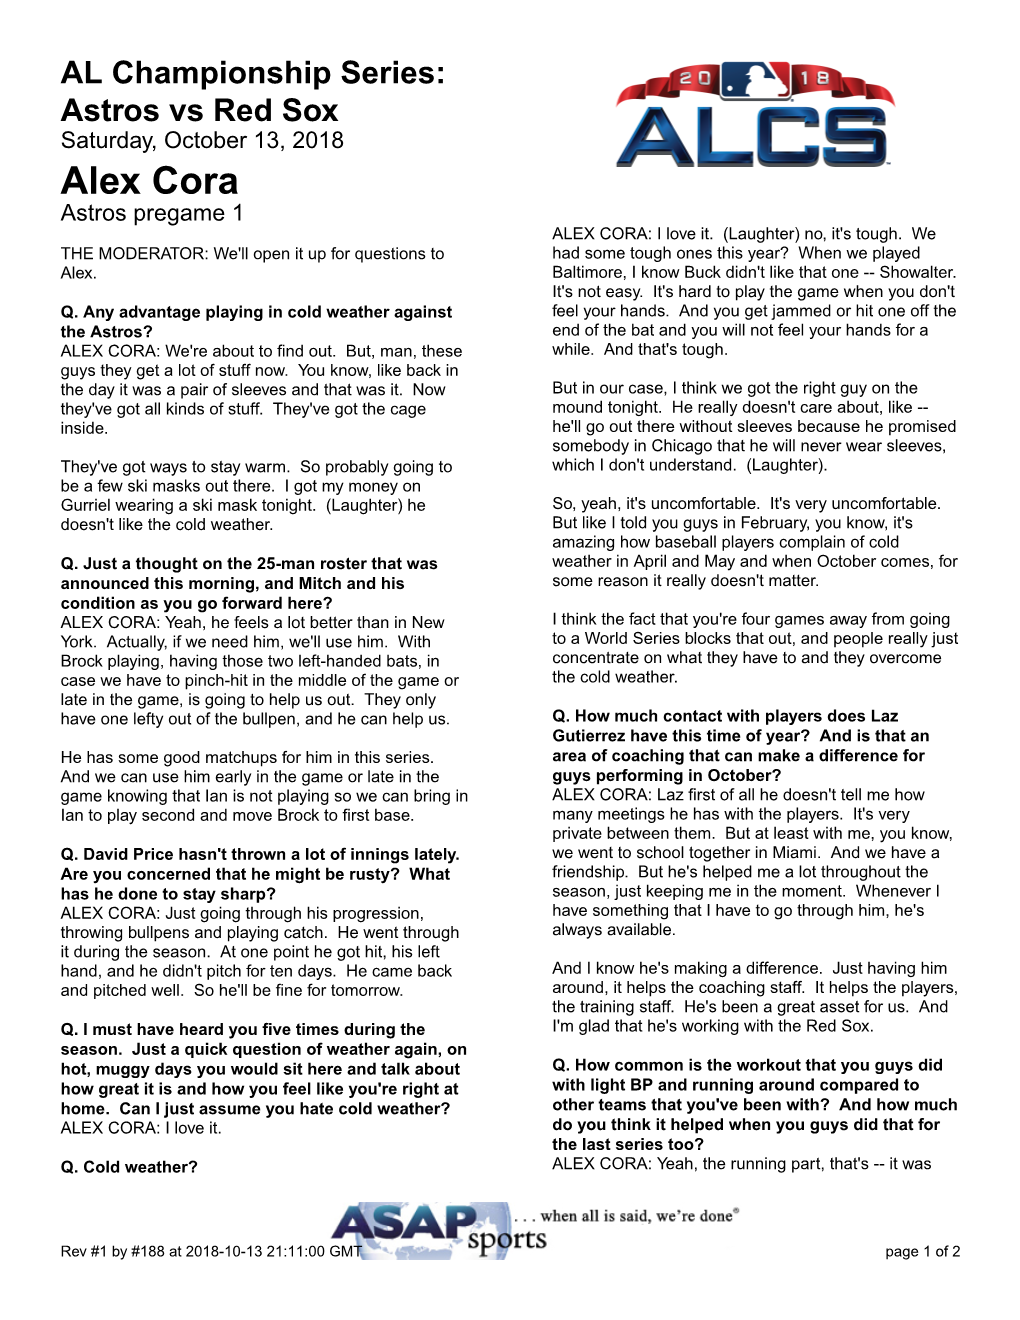 Alex Cora Astros Pregame 1 ALEX CORA: I Love It